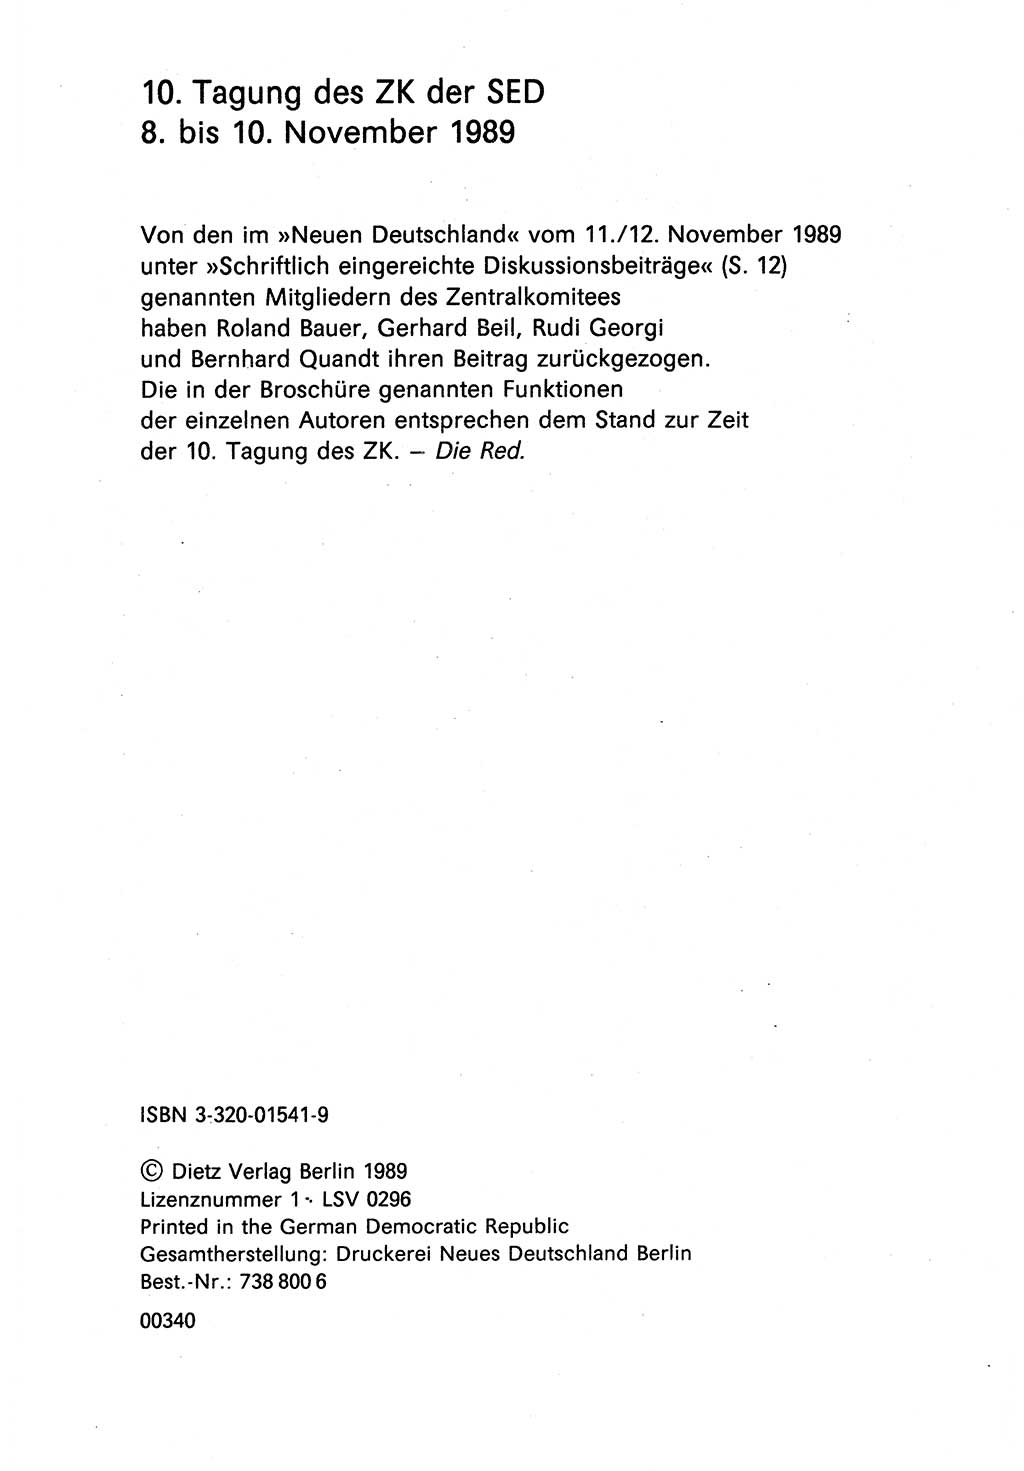 Diskussionsbeiträge, 10. Tagung des ZK (Zentralkomitee) der SED (Sozialistische Einheitspartei Deutschlands) [Deutsche Demokratische Republik (DDR)] 1989, Seite 2 (Disk.-Beitr. 10. Tg. ZK SED DDR 1989, S. 2)